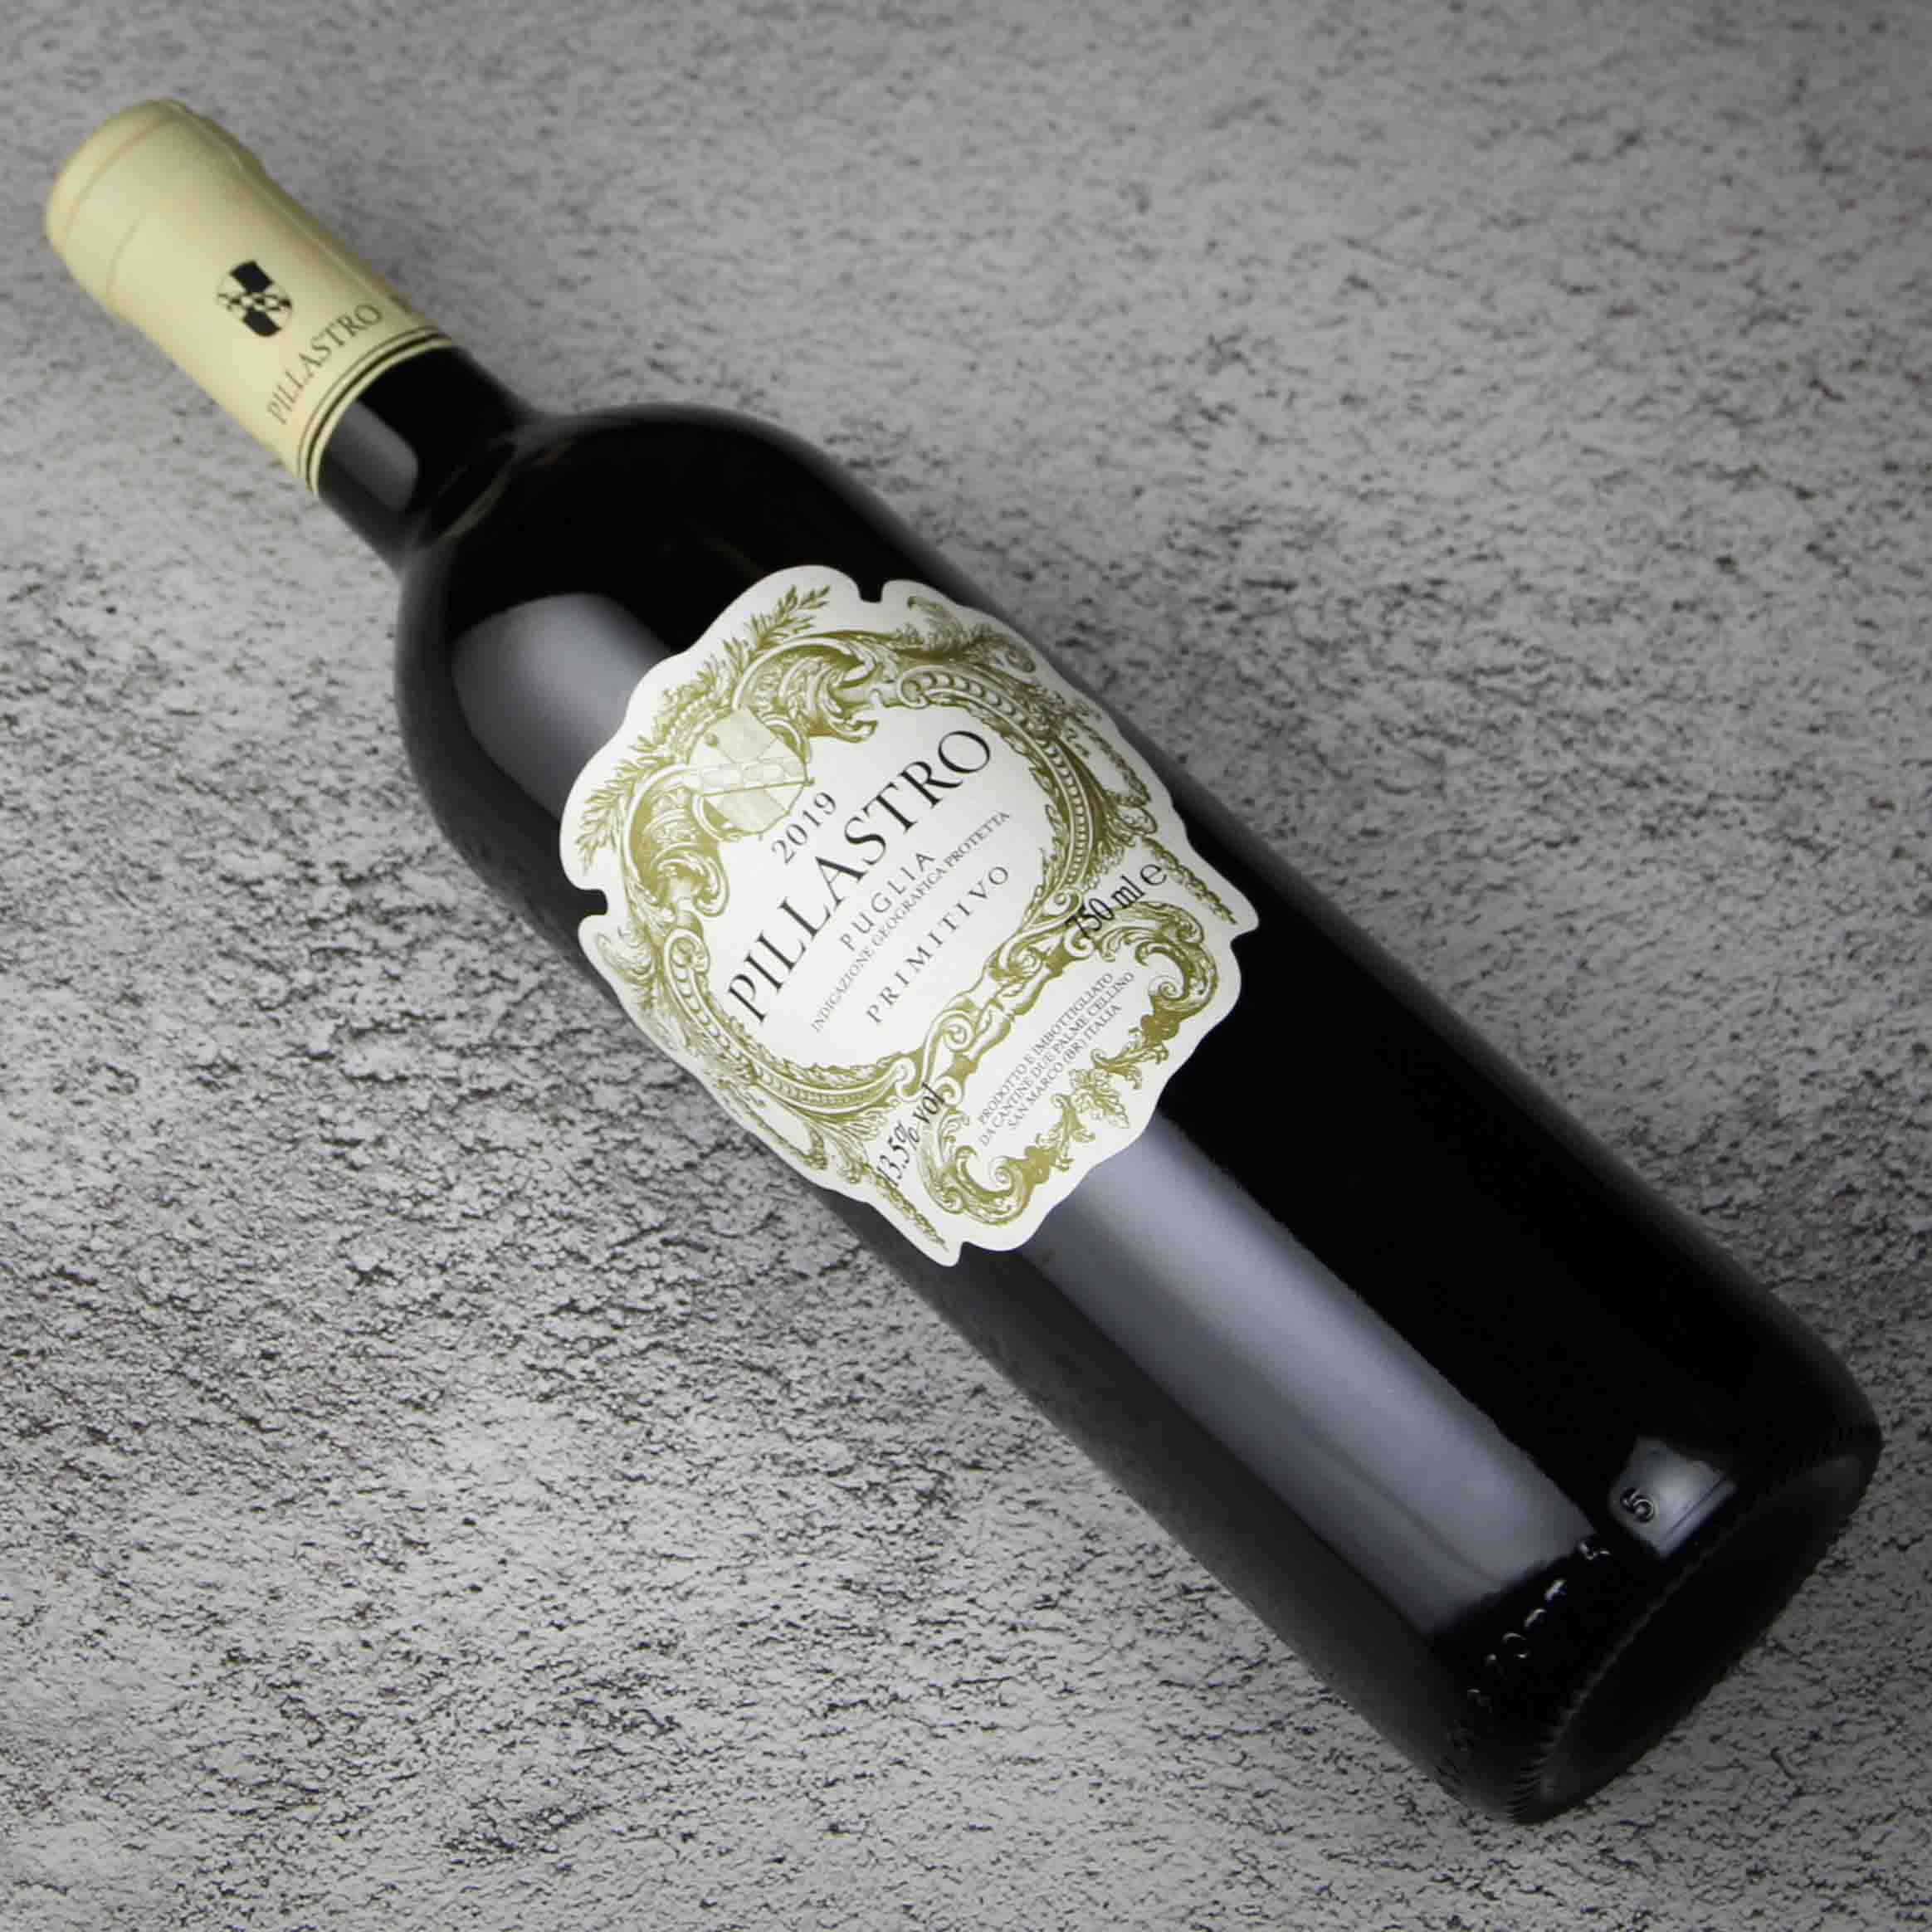 意大利帕拉图普米蒂沃红葡萄酒 2019